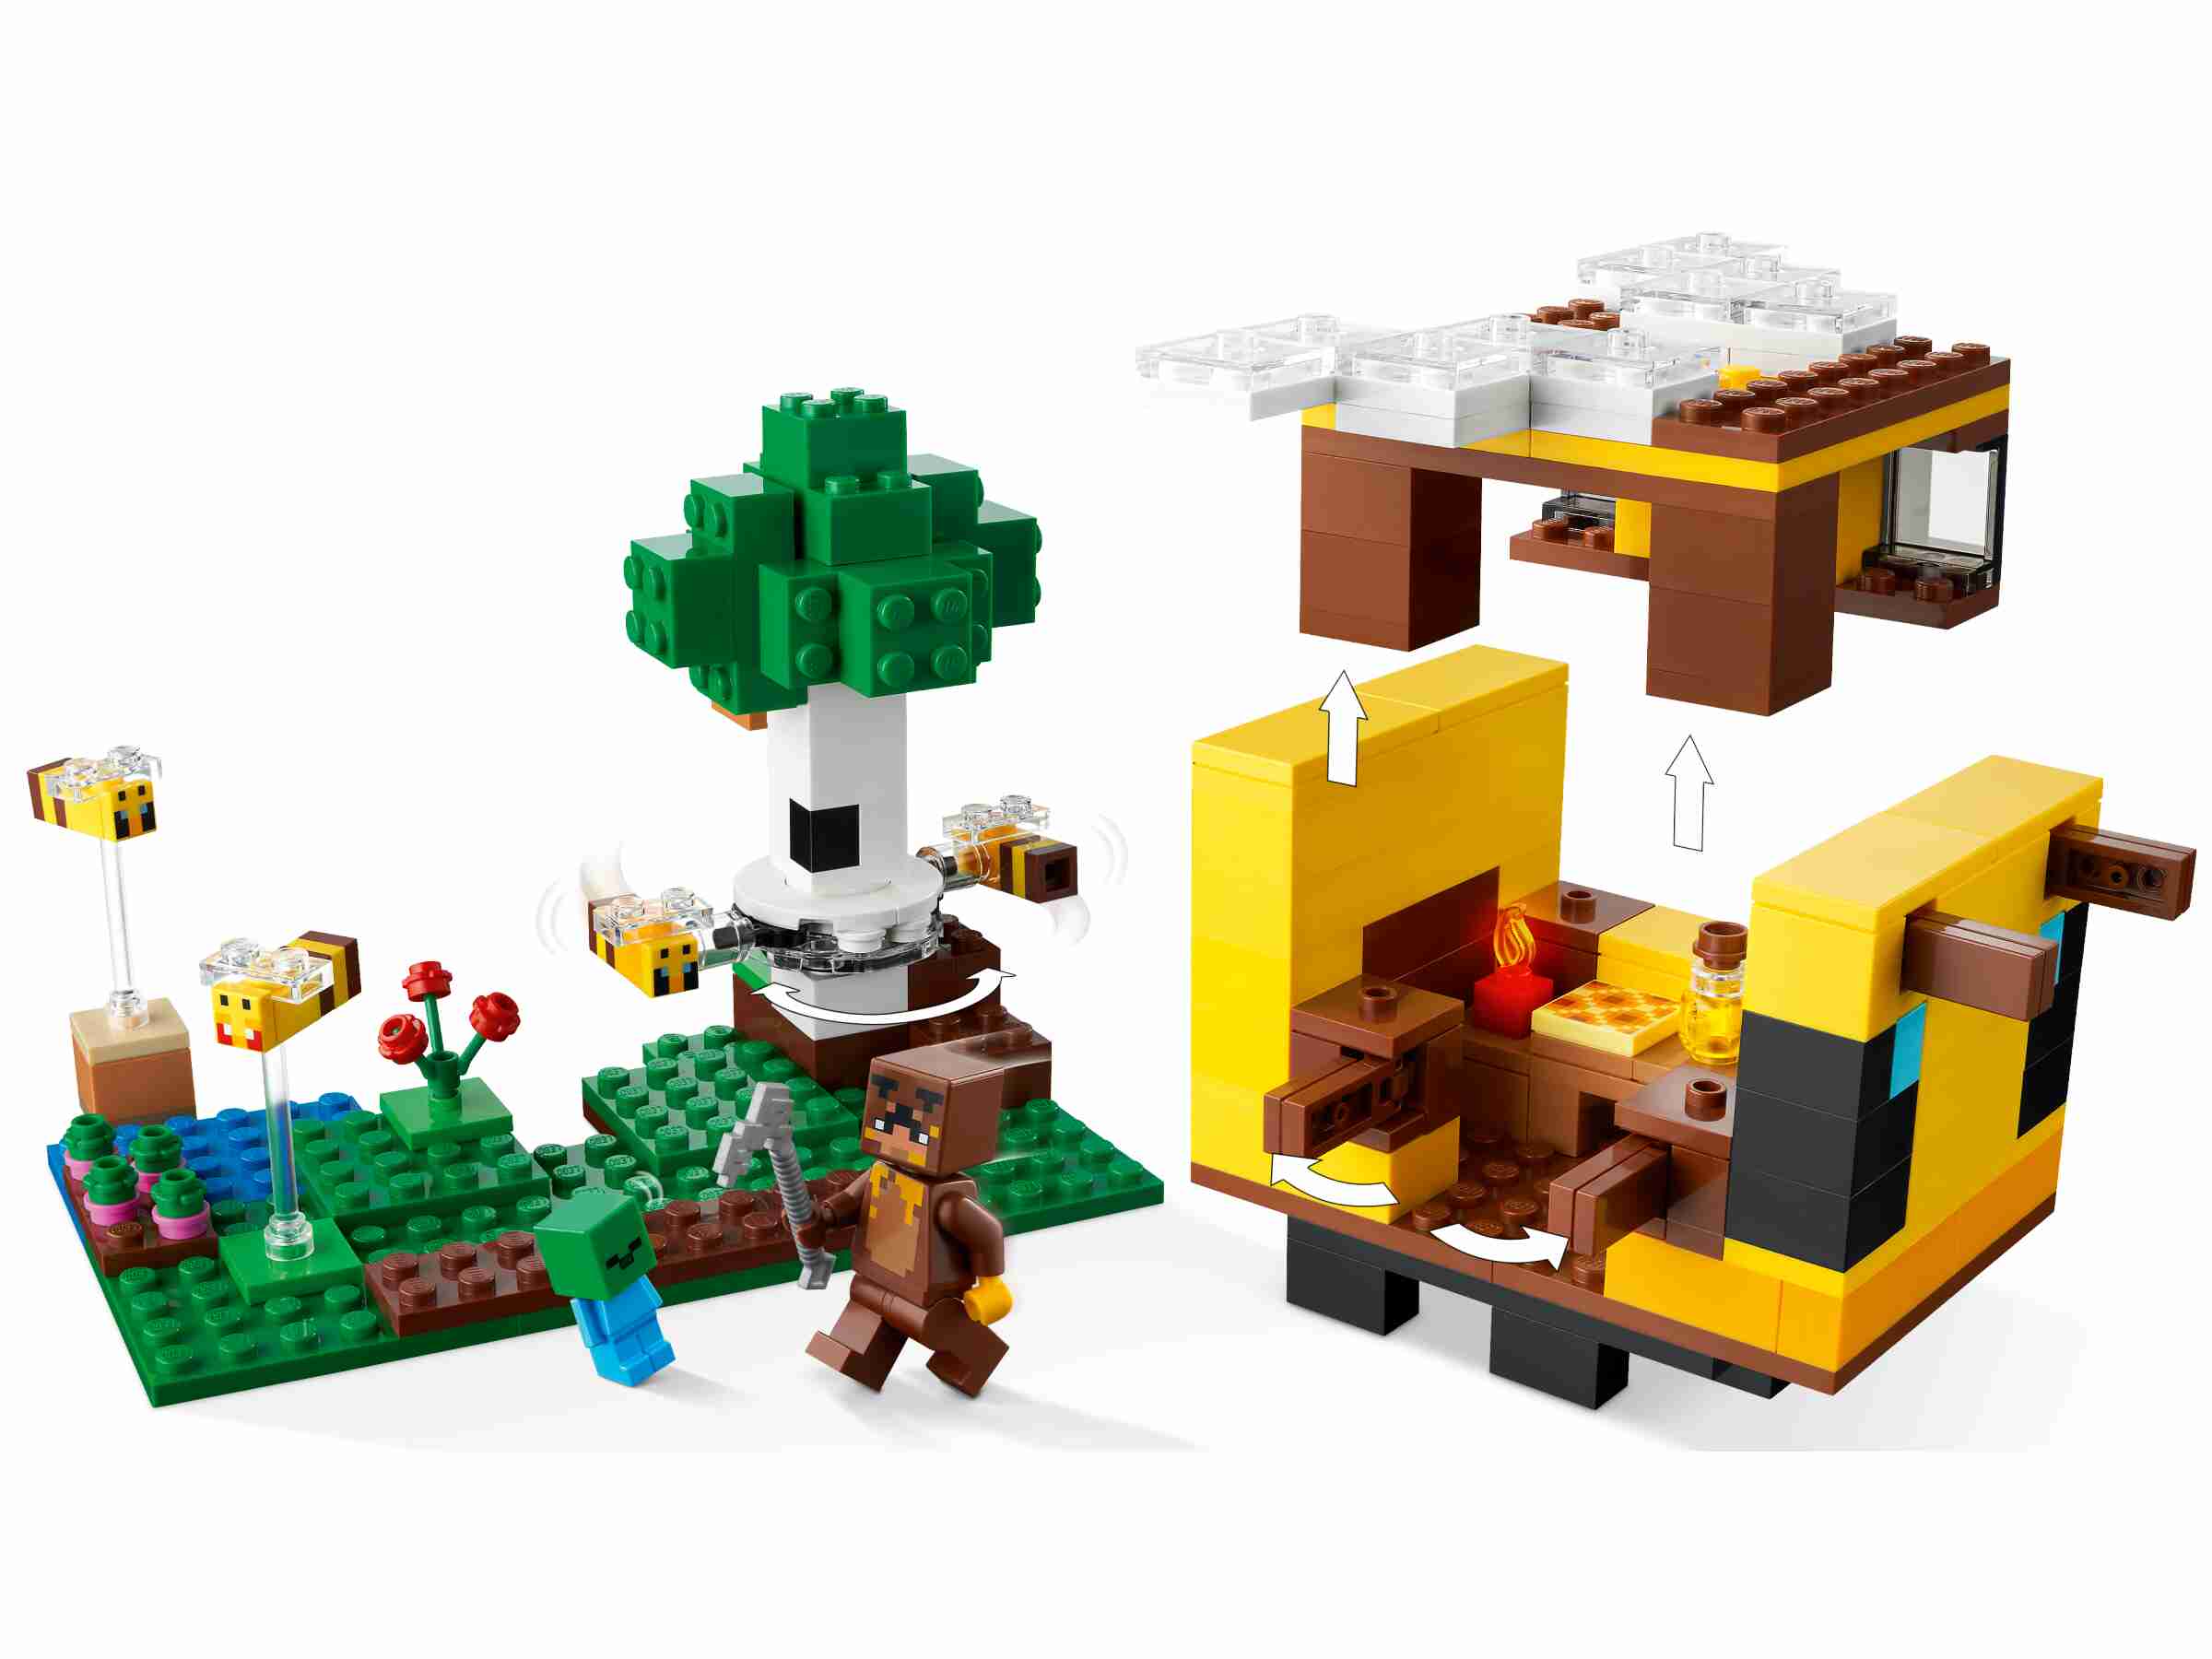 LEGO 21241 Minecraft Das Bienenhäuschen, Honigbär, Zombiebaby, 4 Bienen